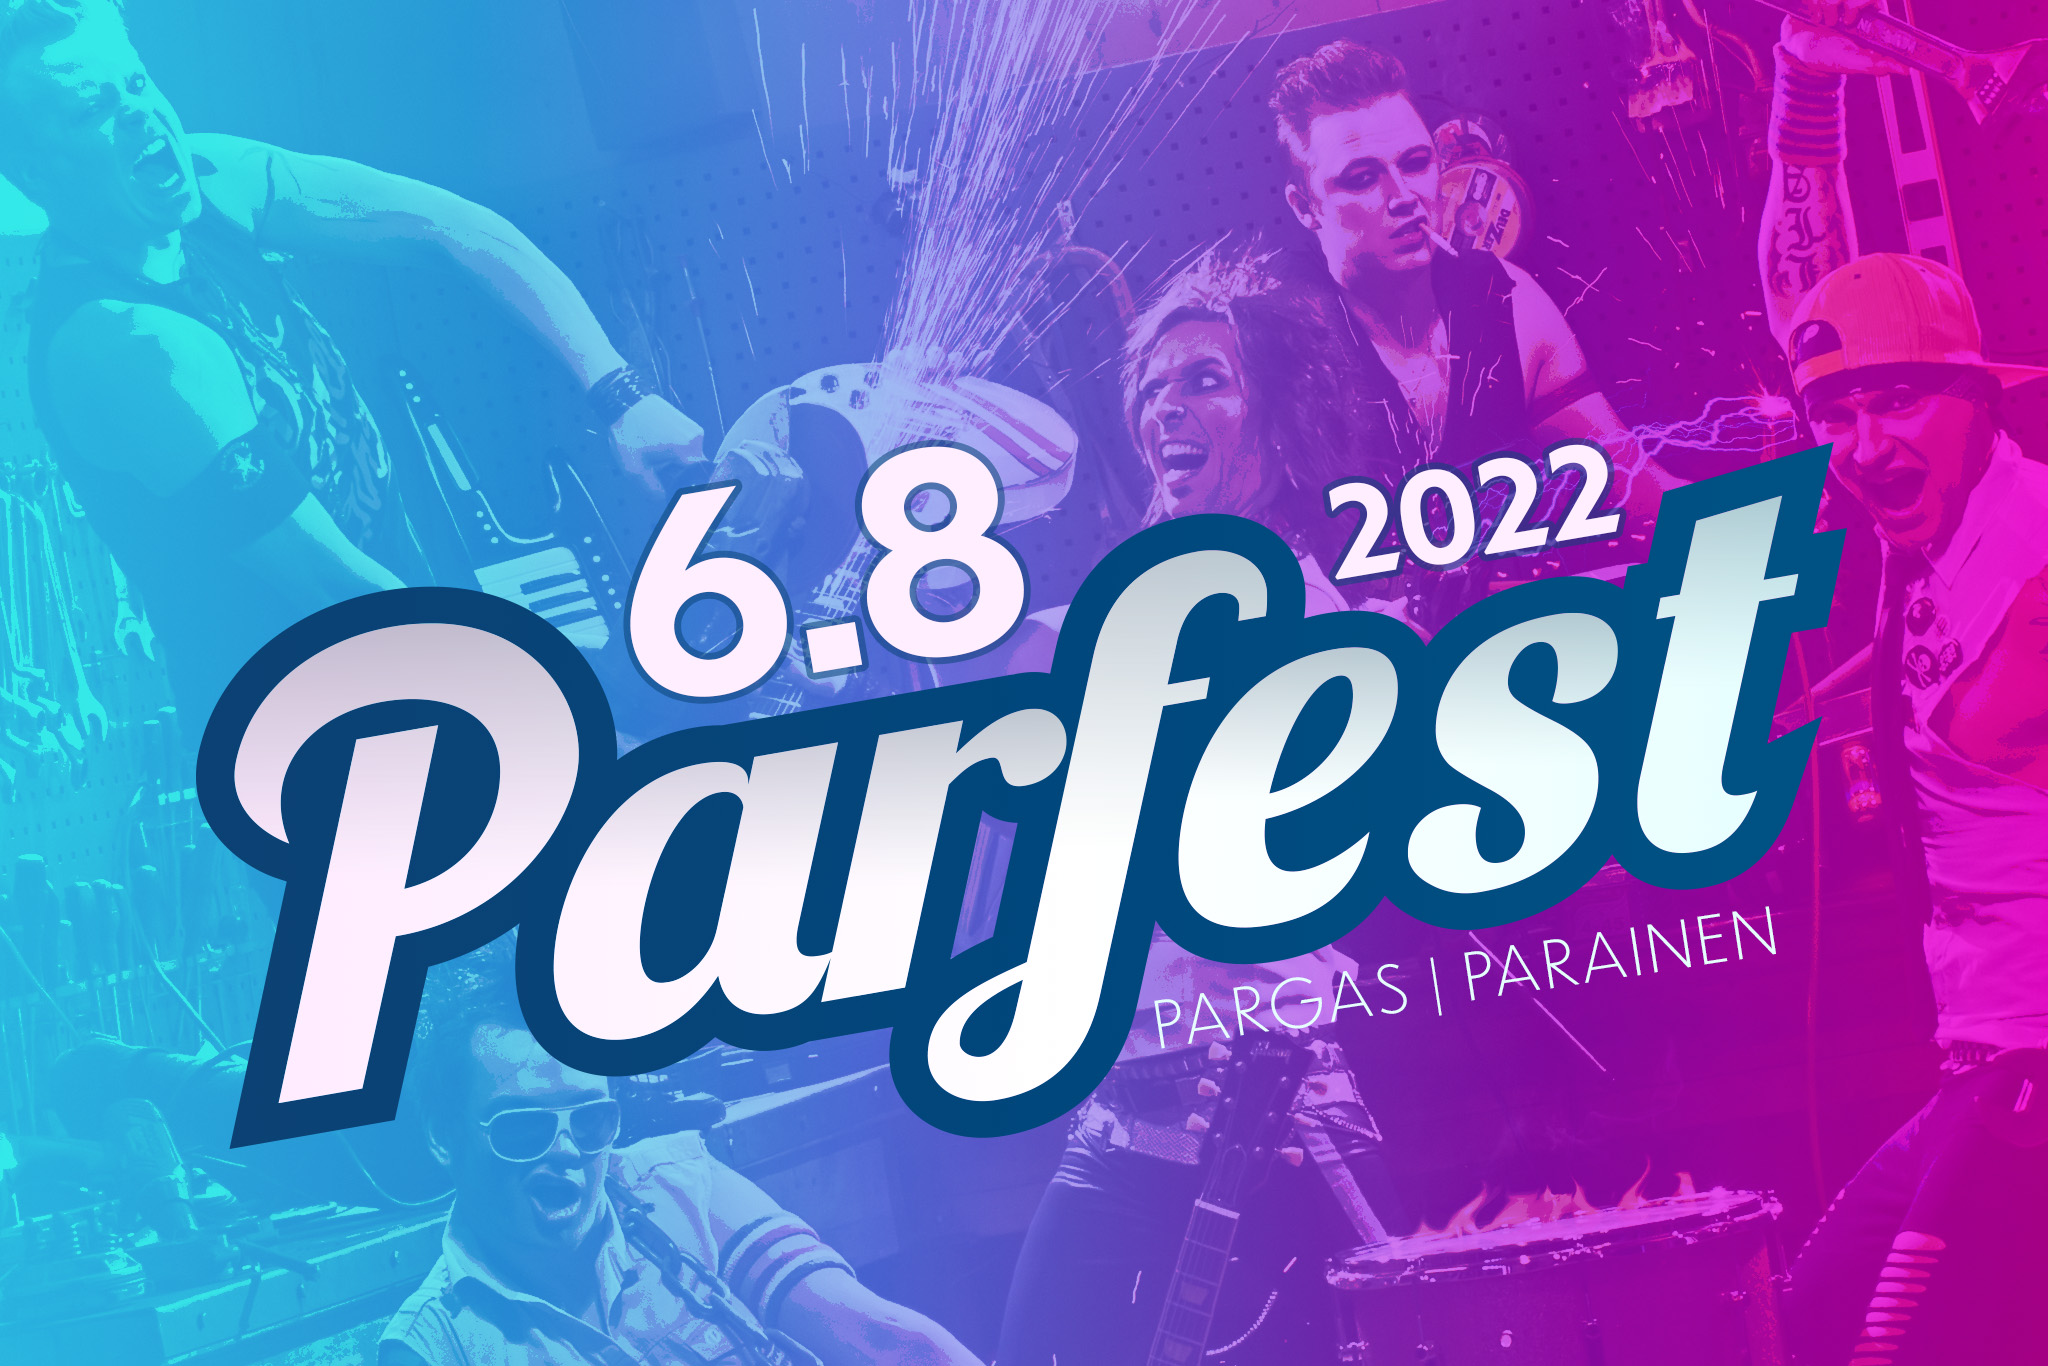 Parfest 6.8.2022